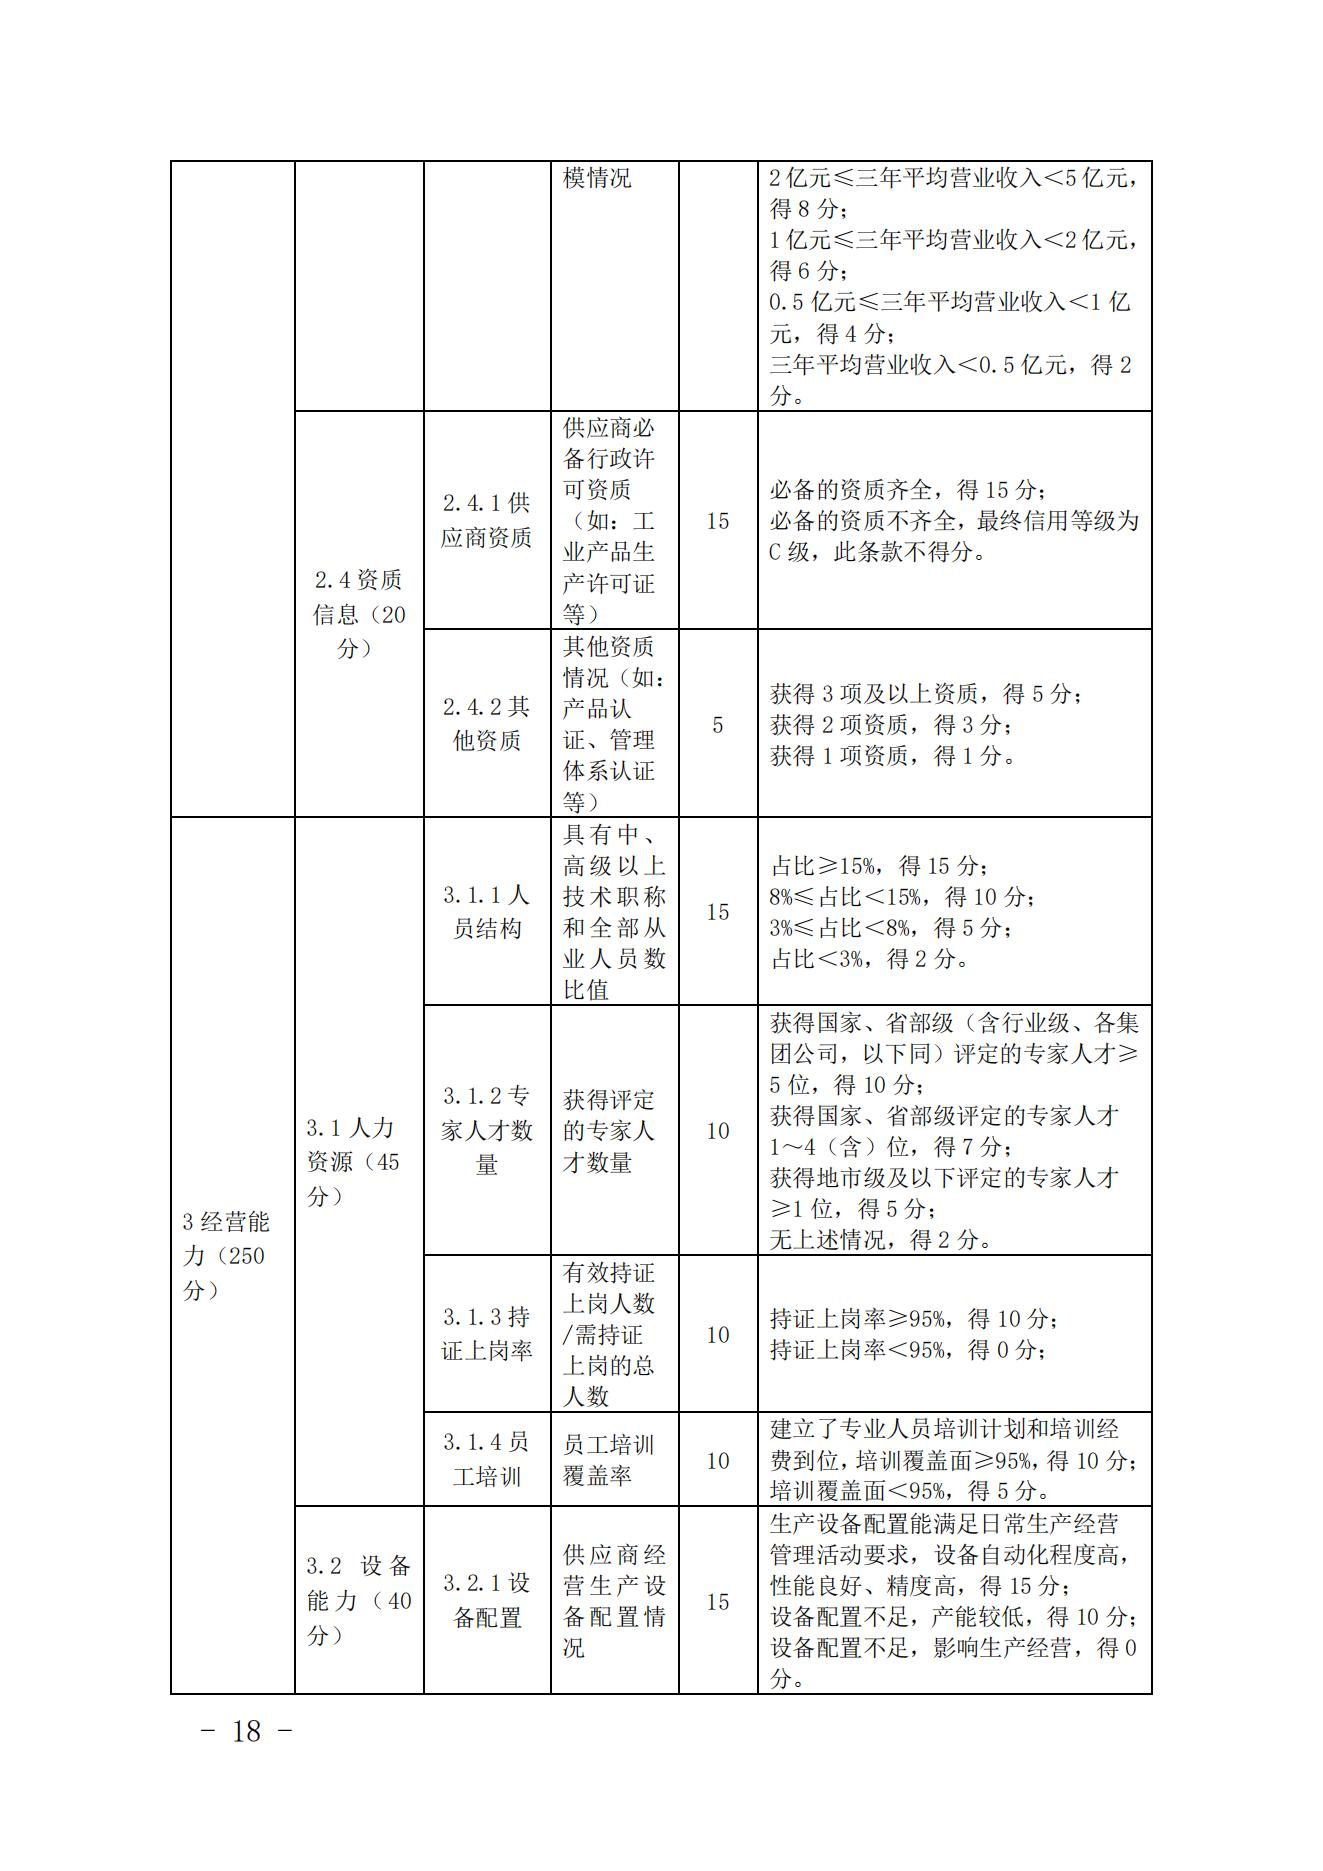 关于印发《中国核能行业协会核能行业供应商信用评价管理办法》《中国核能行业协会核能行业供应商信用评价规范》的通知_17.jpg